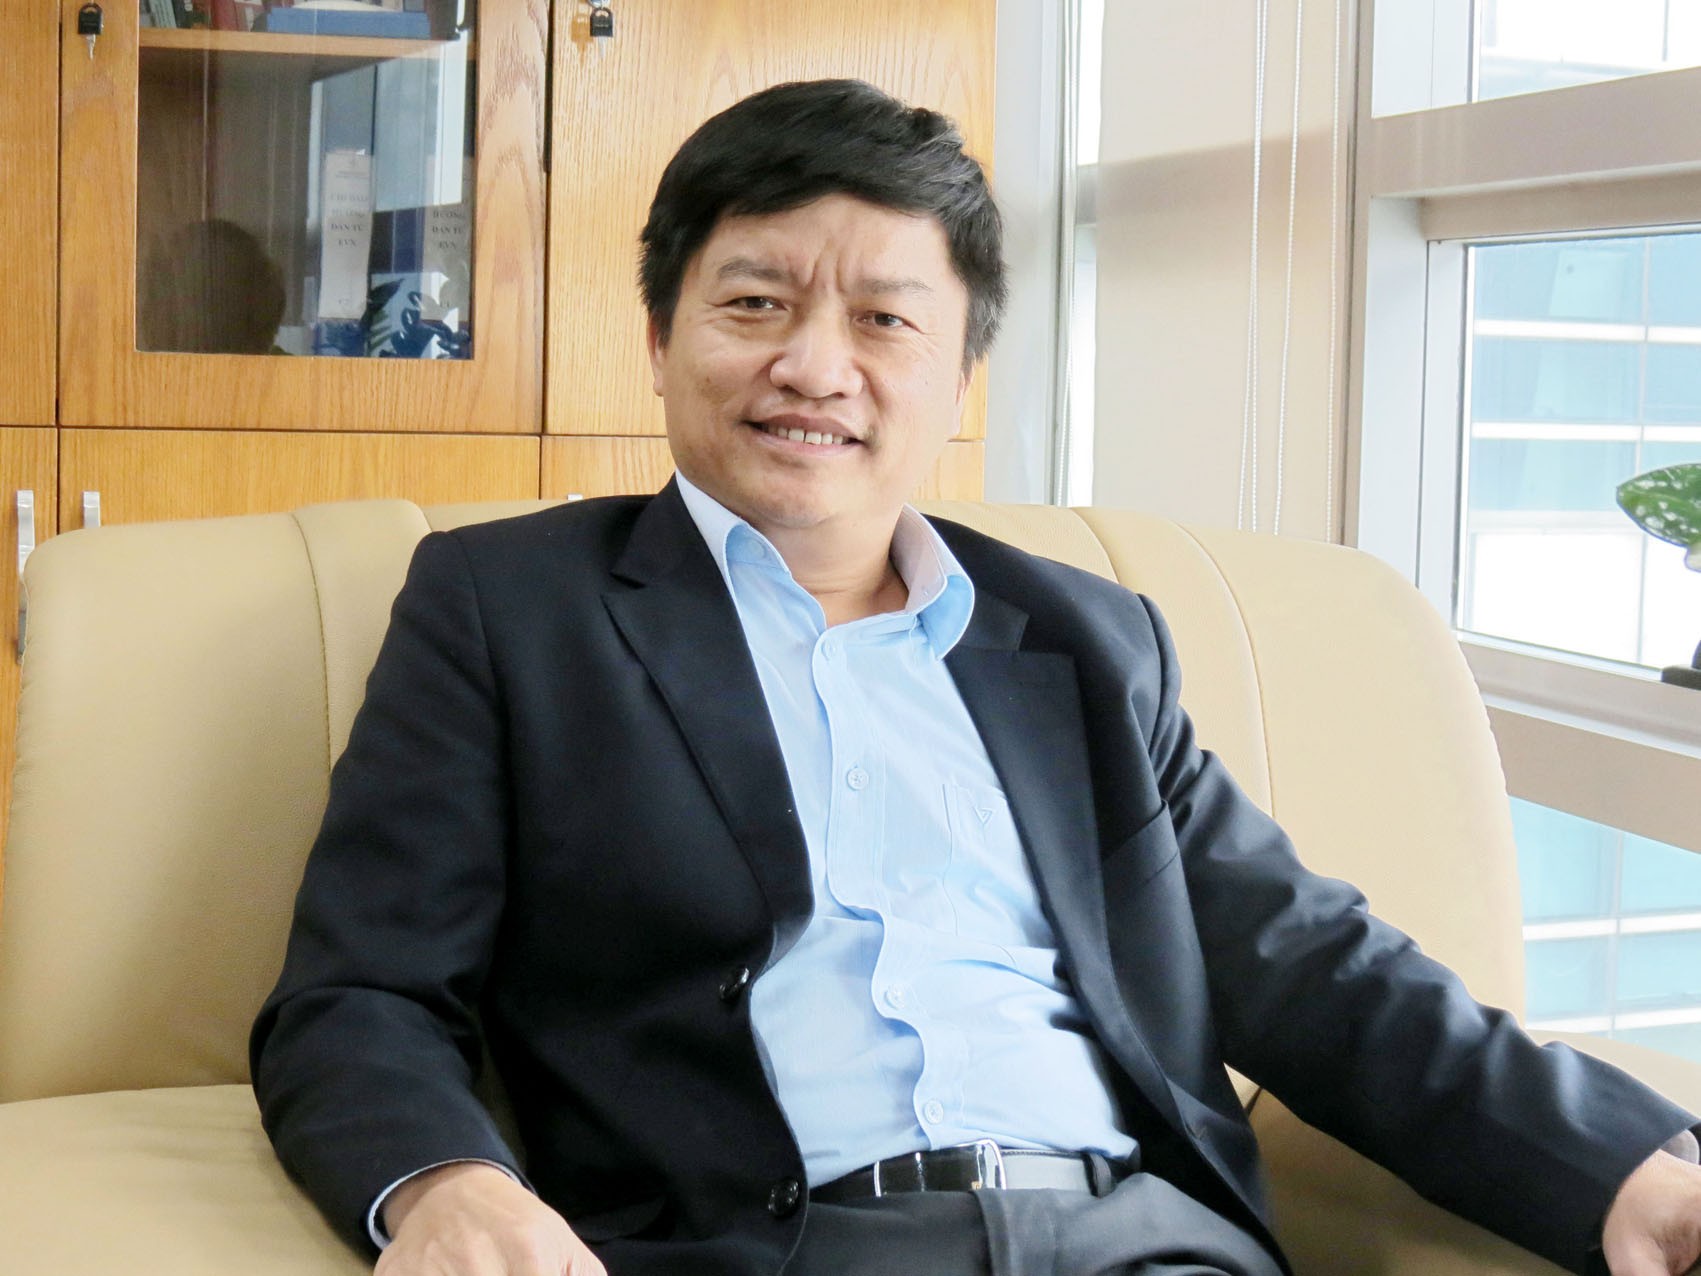 
Từ ngày 01/3/2019 đến nay, ông Nguyễn Tiến Khoa là Chủ tịch HĐTV Tổng công ty Phát điện 1
